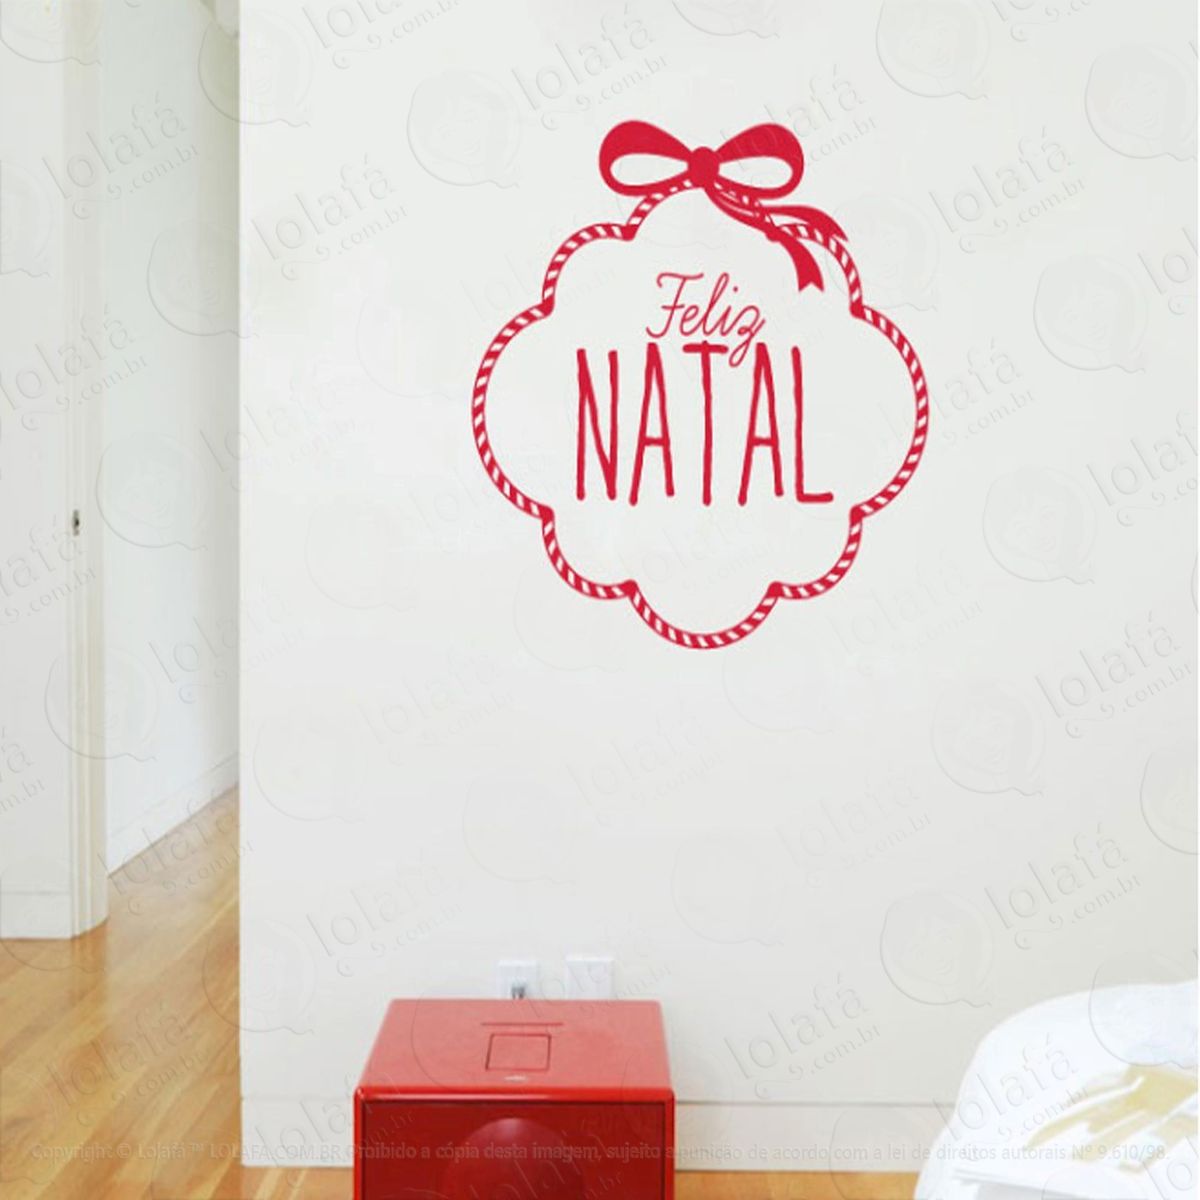 guirlanda adesivo de natal para vitrine, parede, porta de vidro - decoração natalina mod:118